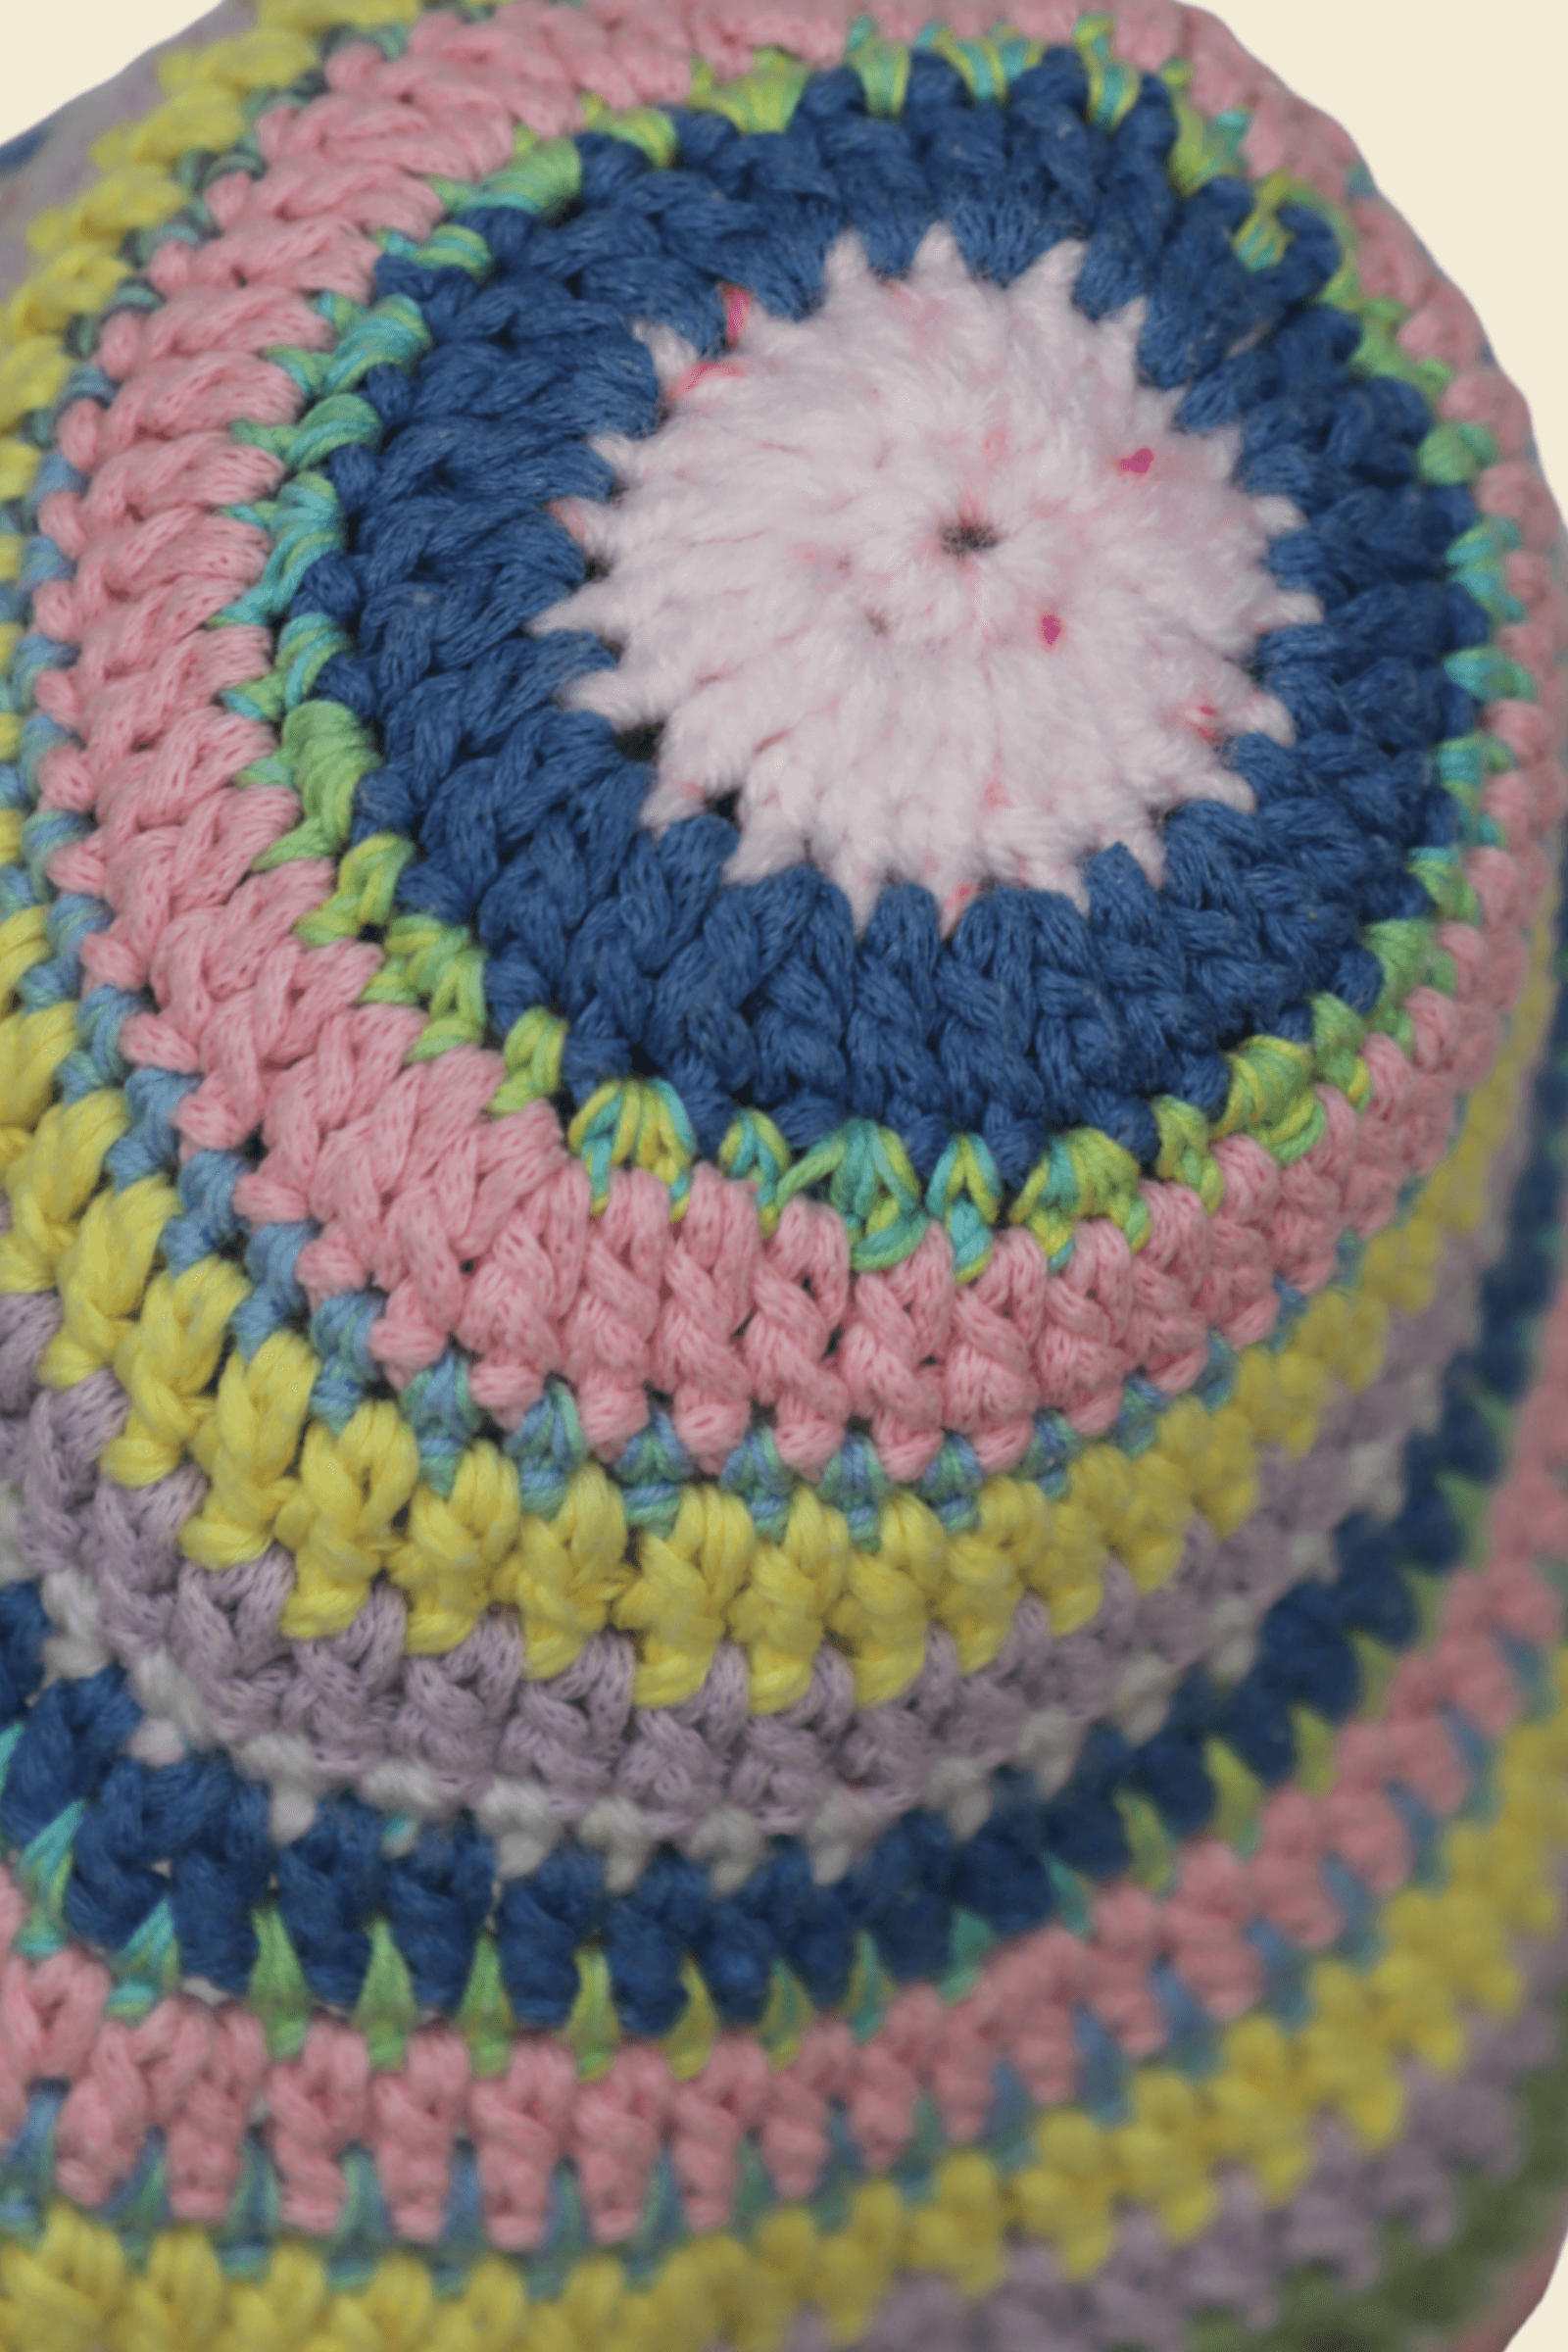 Bonita Crochet Bucket Hat - iriss studio